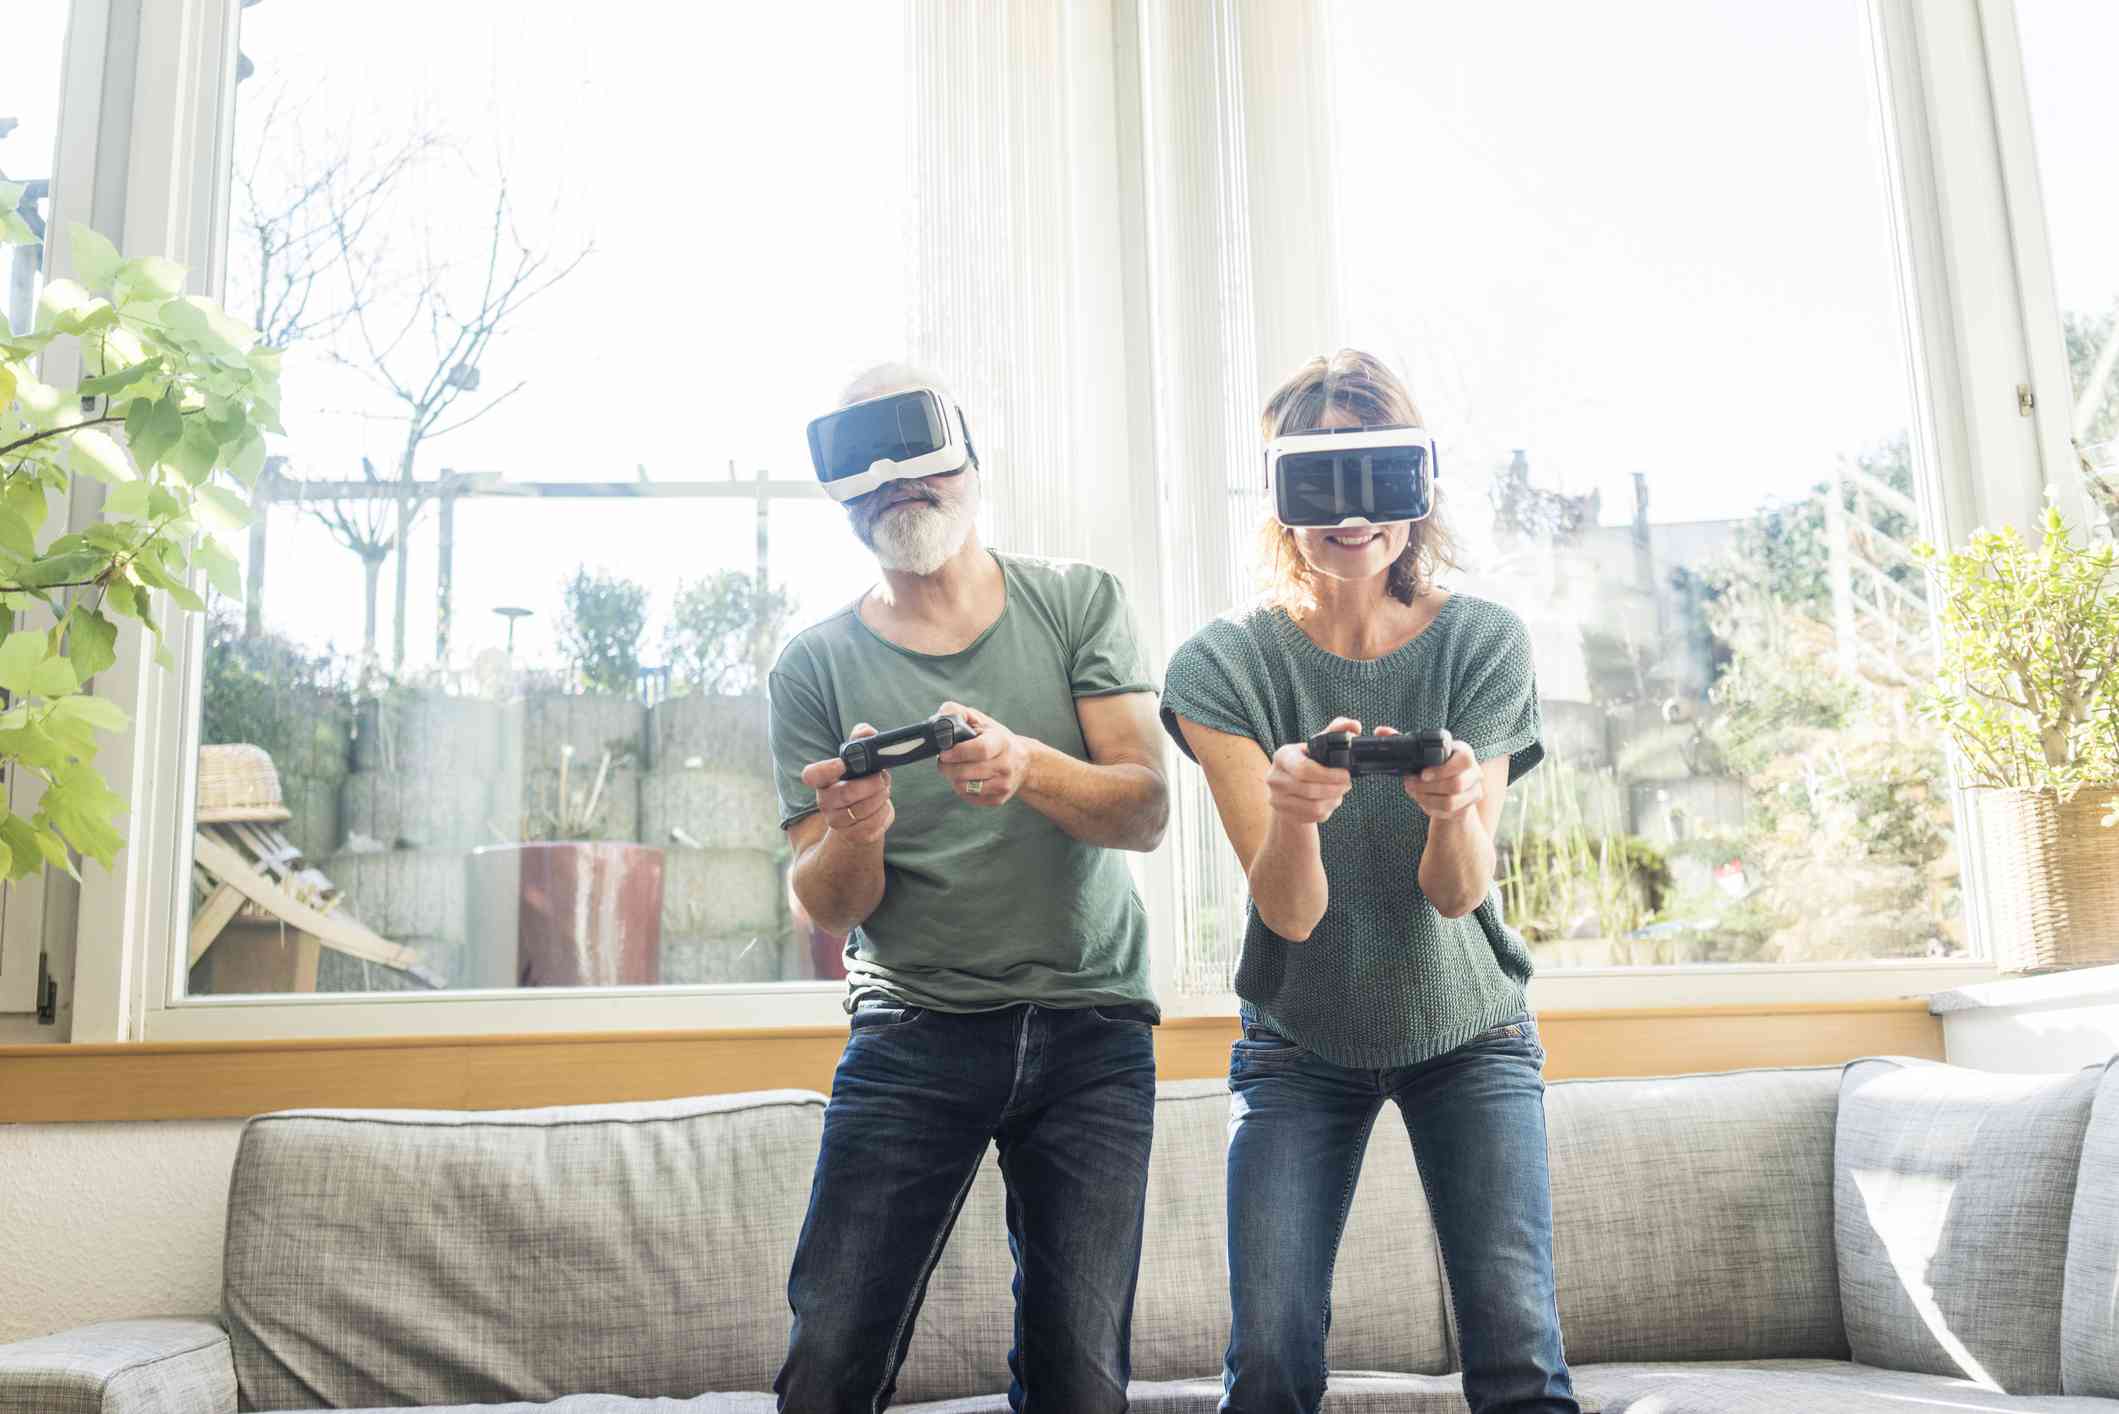 Een volwassen stel aan het gamen met een VR-bril op.